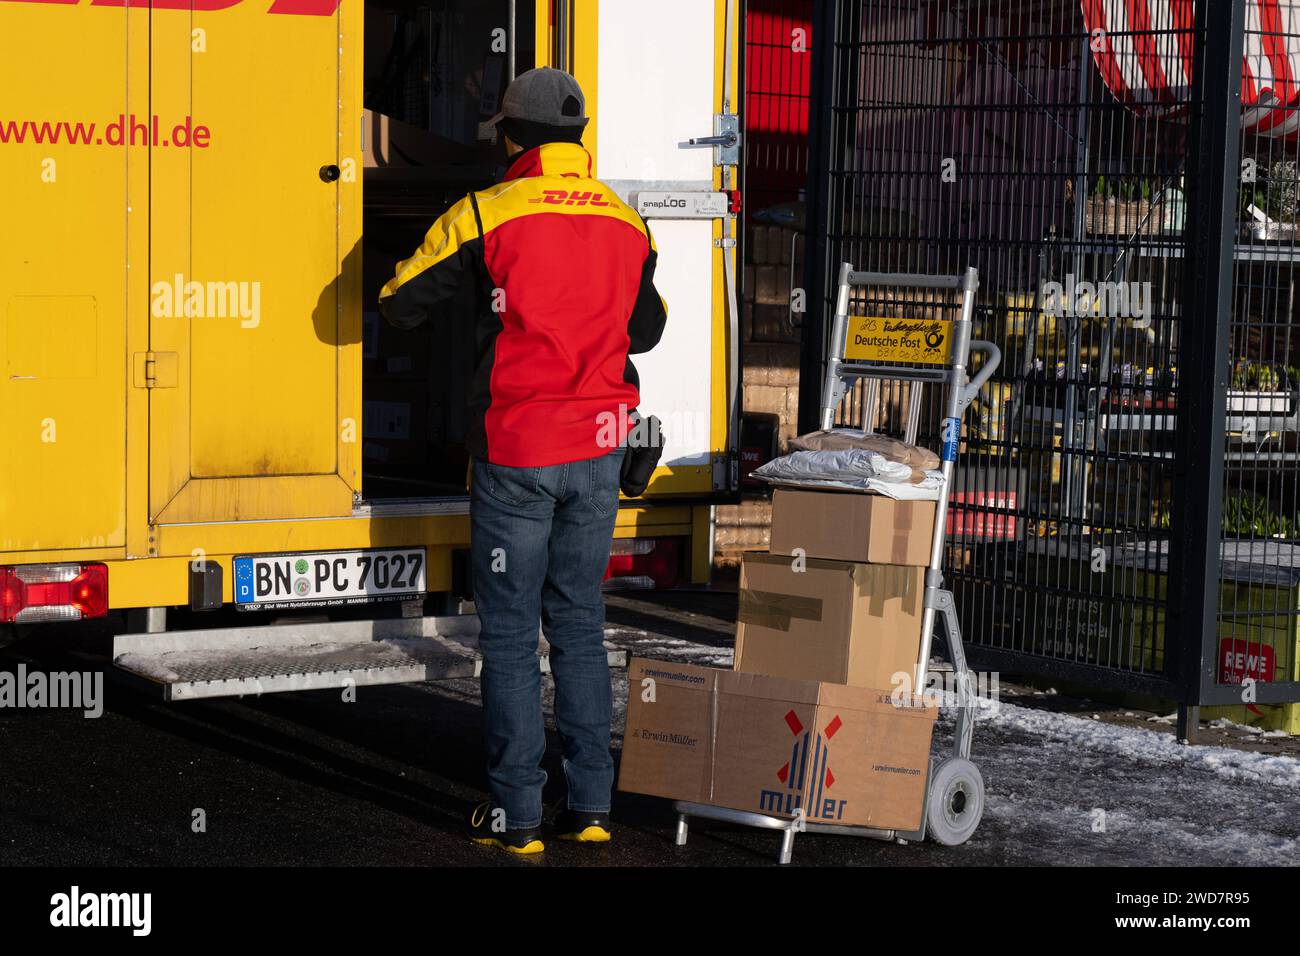 Lieferdienst in Aktion: DHL-Zusteller bereitet Paketlieferung bei REWE vor. , Deutschland, Rheinland-Pfalz, Speyer, 19.01.2024, Auf dem Foto ist ein DHL-Zusteller zu sehen, der neben einem offenen, gelben Lieferwagen steht und Pakete auf einem Transportwagen vor sich hat. Im Hintergrund ist ein REWE-Schild erkennbar, was darauf hinweist, dass die Lieferung in der Nähe eines REWE-Supermarktes stattfindet. *** Delivery service in action DHL delivery driver prepares parcel delivery at REWE, Germany, Rhineland-Palatinate, Speyer, 19 01 2024, The photo shows a DHL delivery driver standing next to a Stock Photo